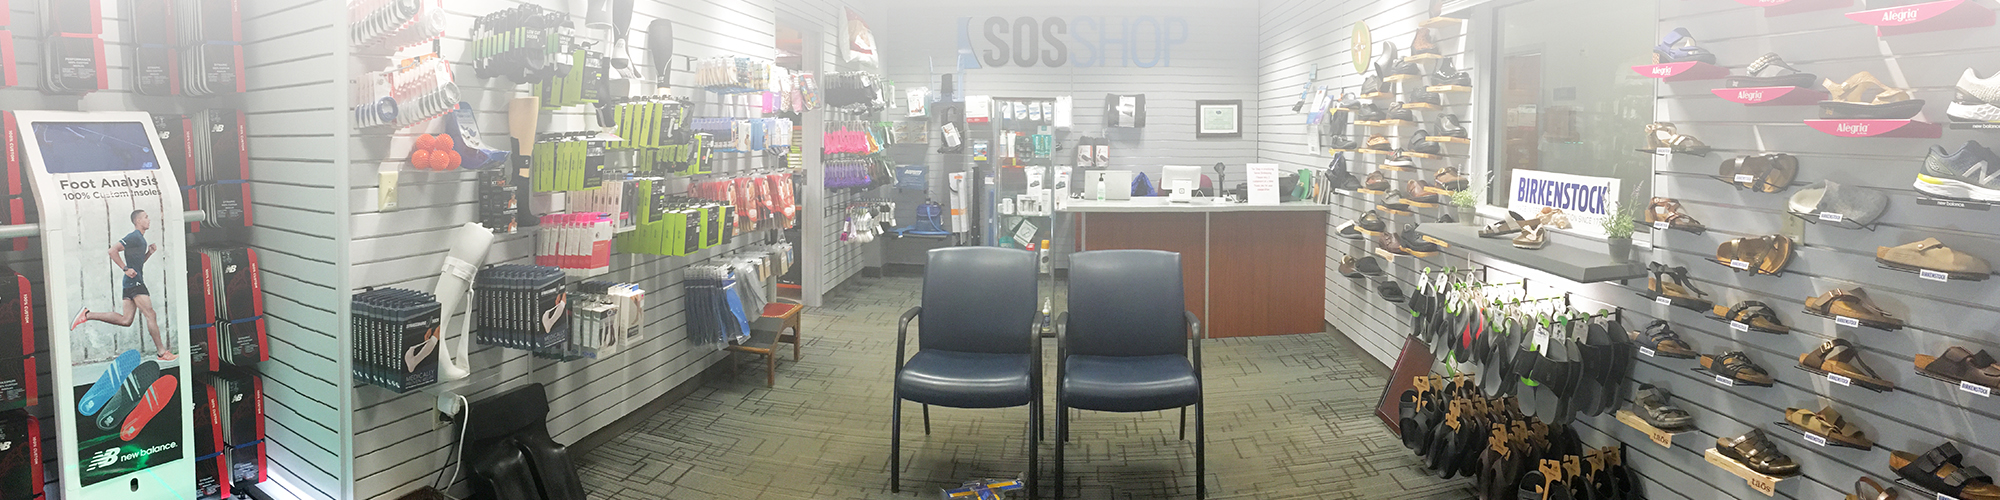 SOS Store near syracuse ny